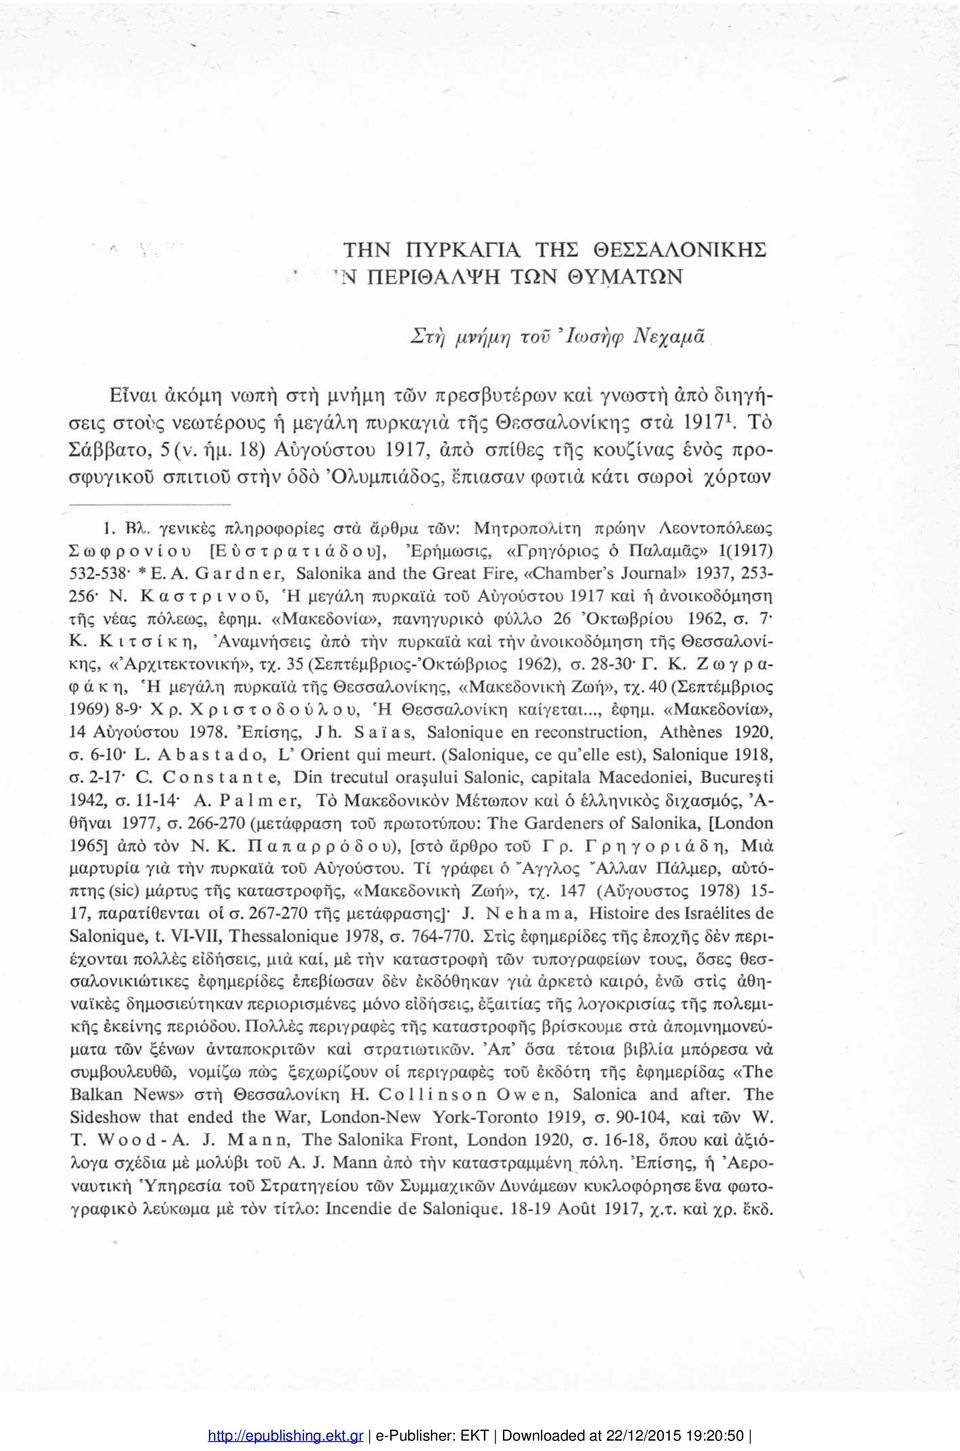 γενικές πληροφορίες στα άρθρα τών: Μητροπολίτη πρώην Λεοντοπόλεως Σωφρονίου [Εύστρατιάδου], Έρήμωσις, «Γρηγόριος ό Παλαμάς» 1(1917) 532-538' *Ε. A.